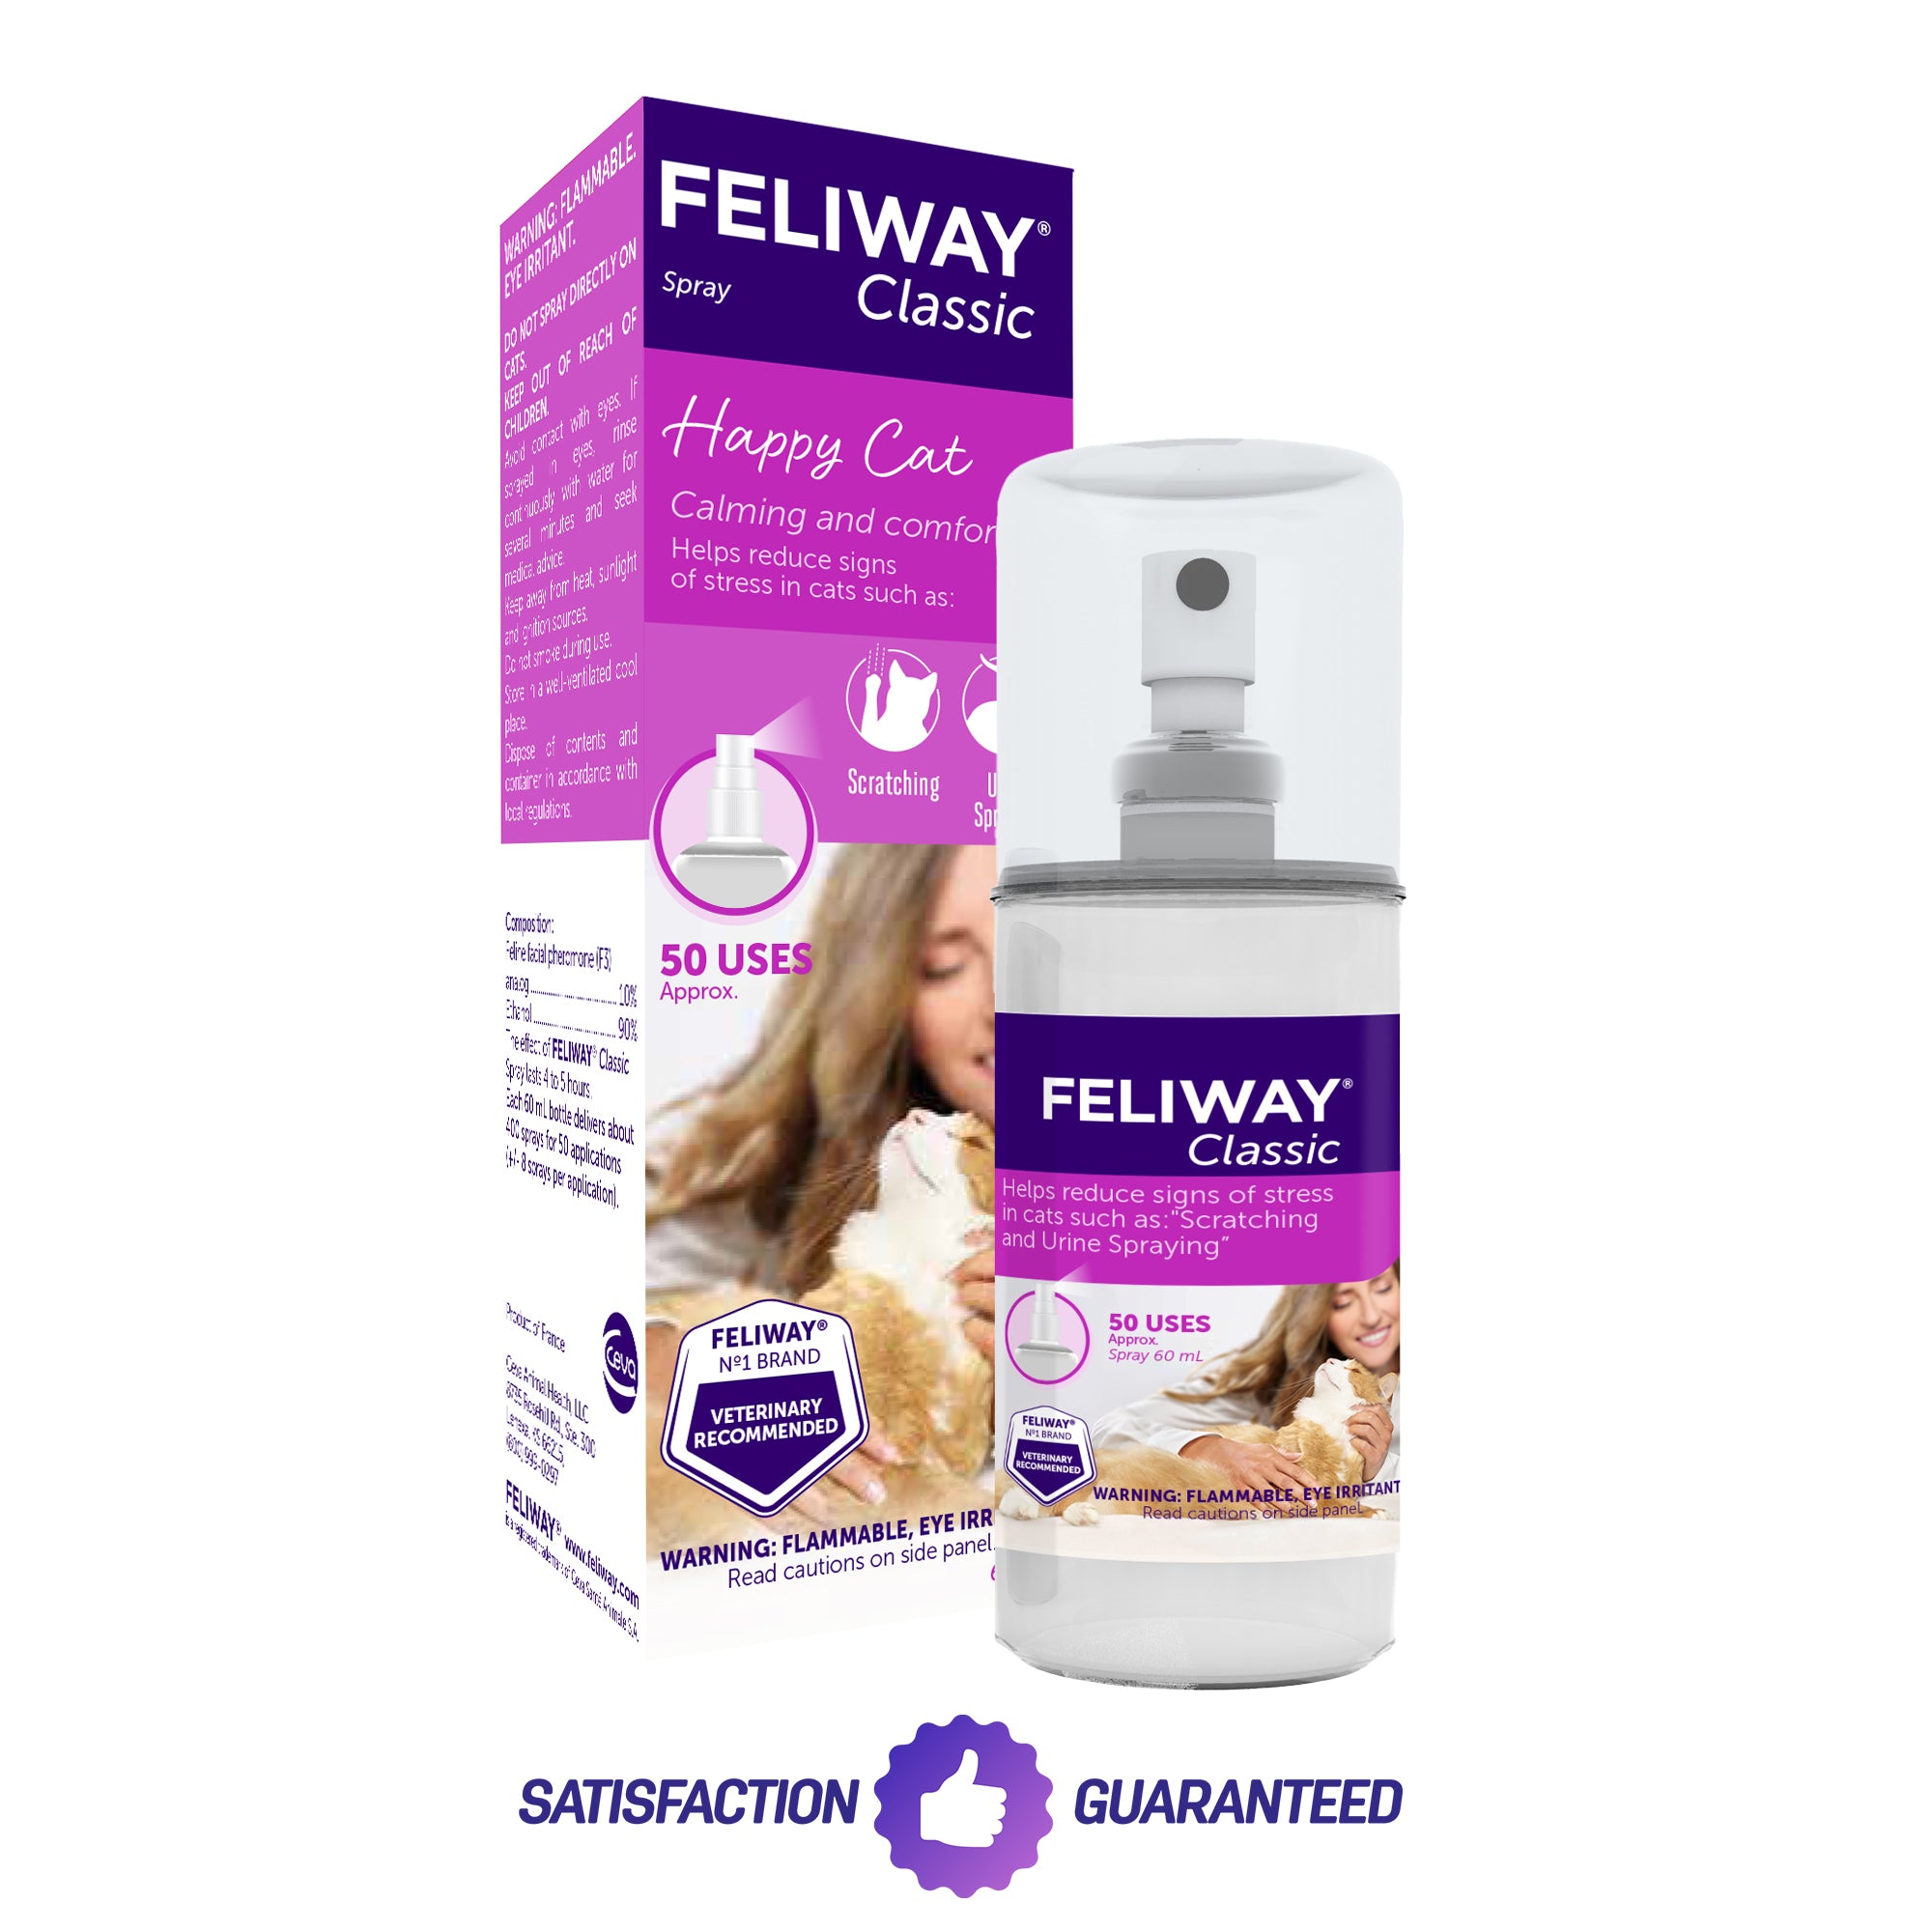 Feliway Classic Kit (Diffuser) 1 pack